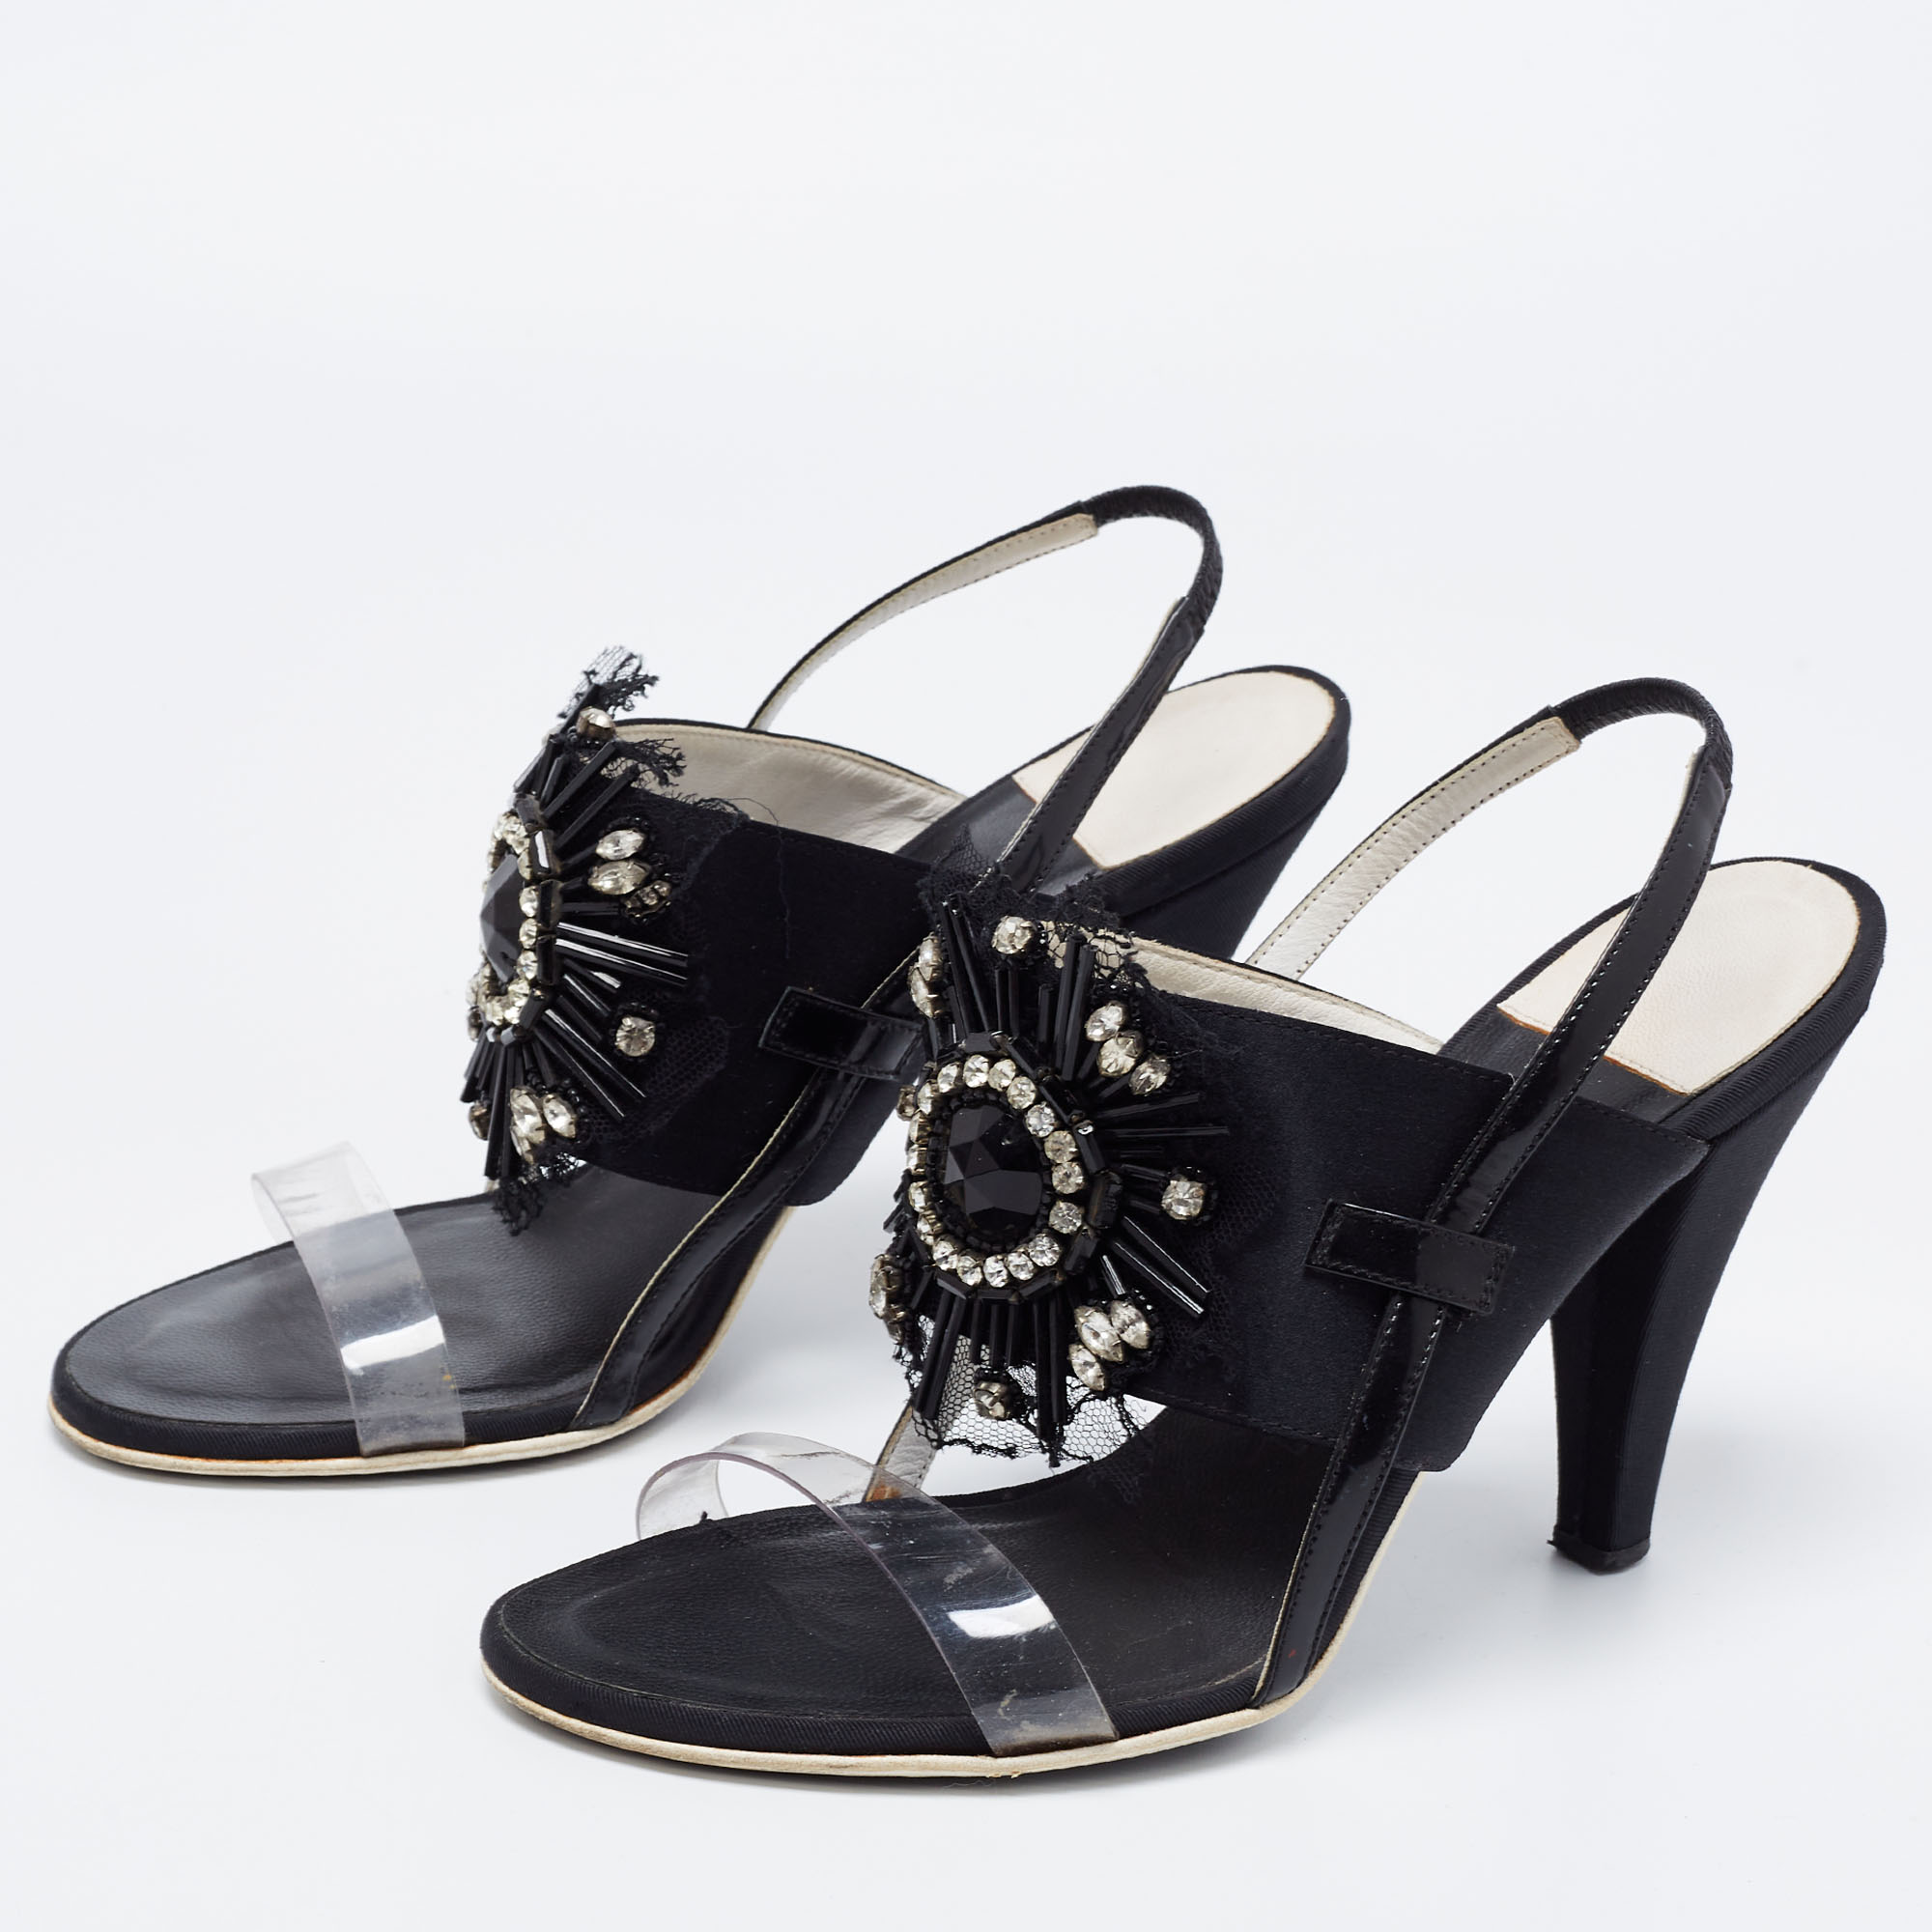 

Chanel Black Satin And PVC Embellished Slingback Sandals Size